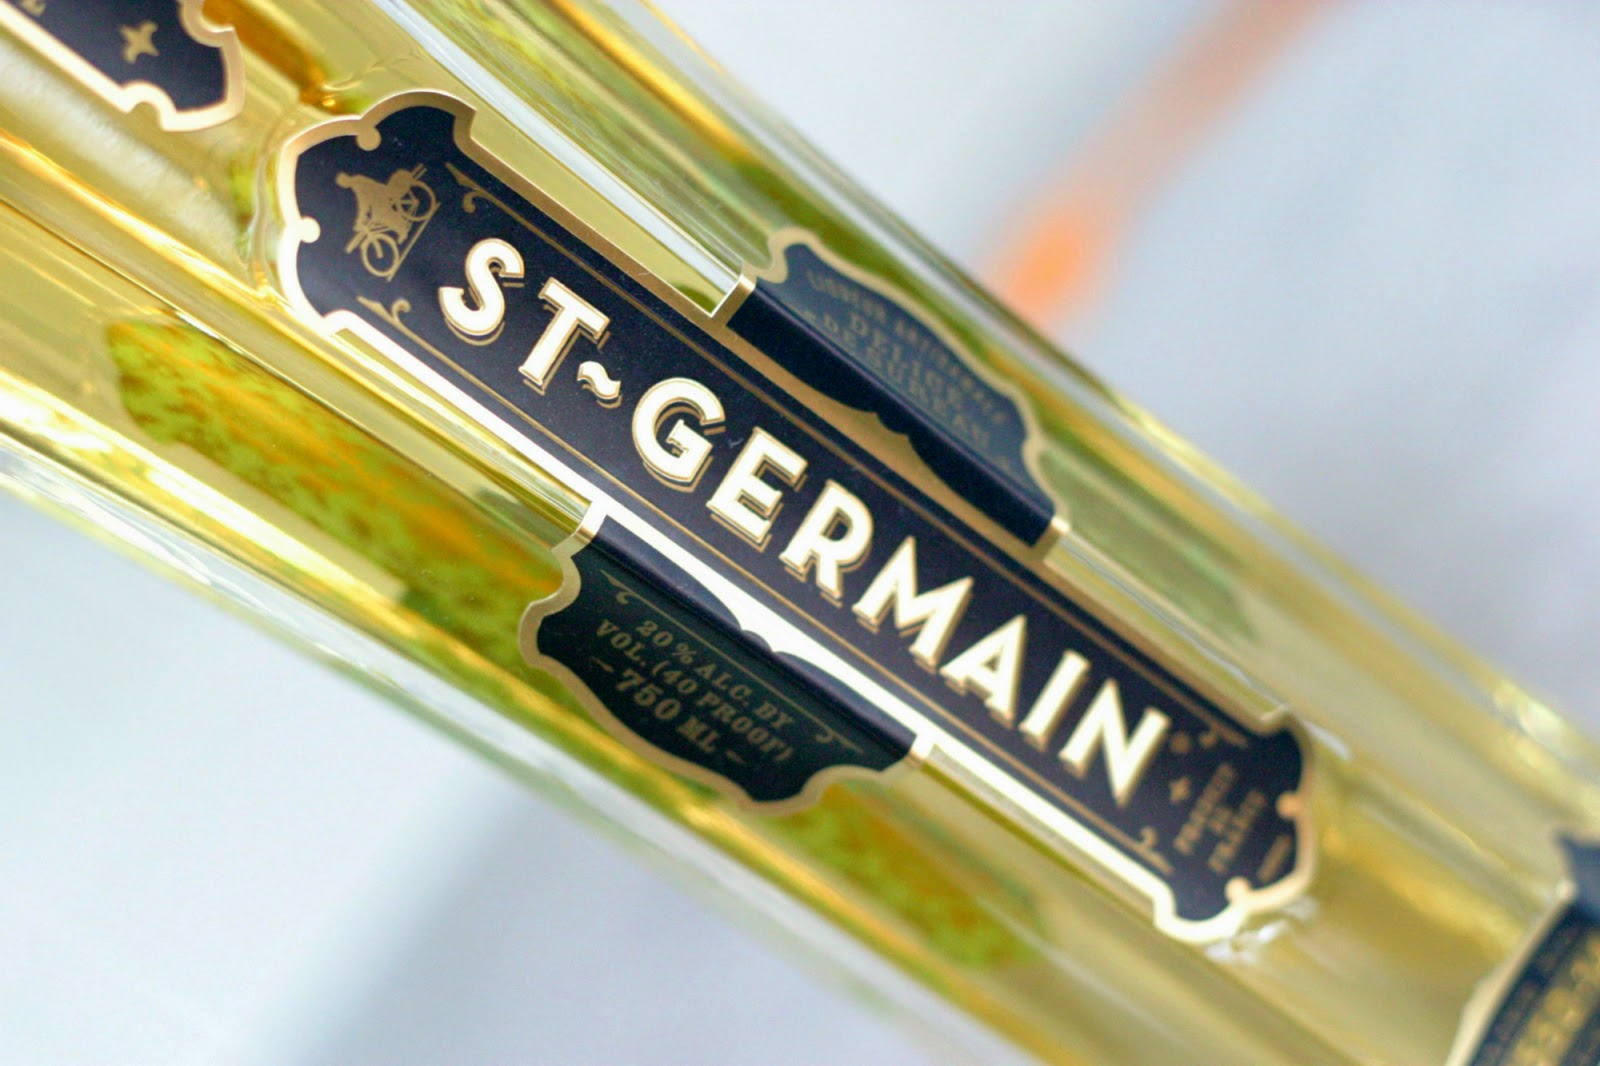 Bottle Buy: St. Germain